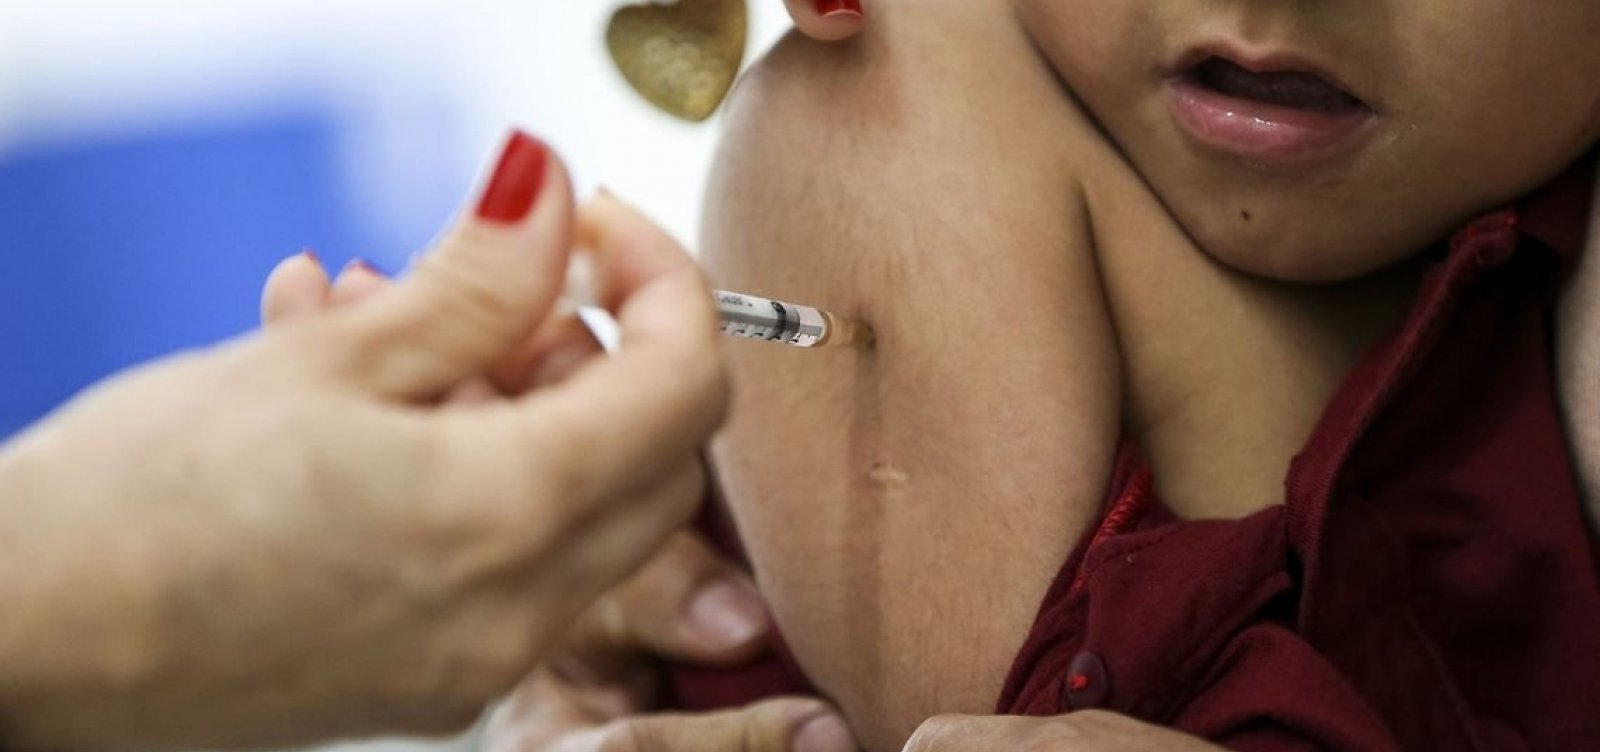 Ministério da Saúde lança campanha contra sarampo